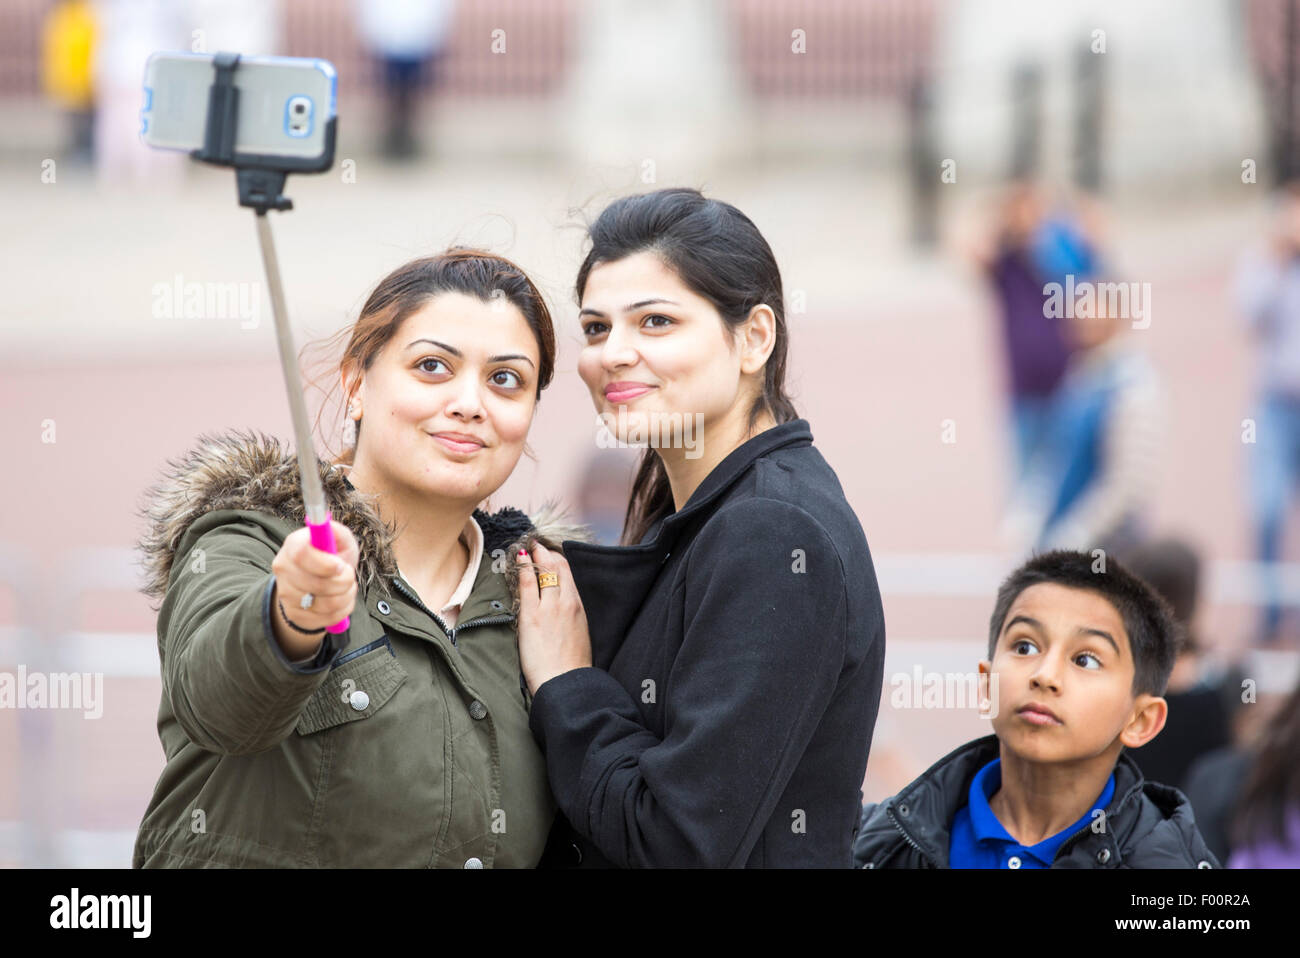 Asiatische Frauen Pose für ein Selbstportrait mit einem Handy und einem Selfie stick außerhalb der Buckingham Palace, London, UK. Stockfoto